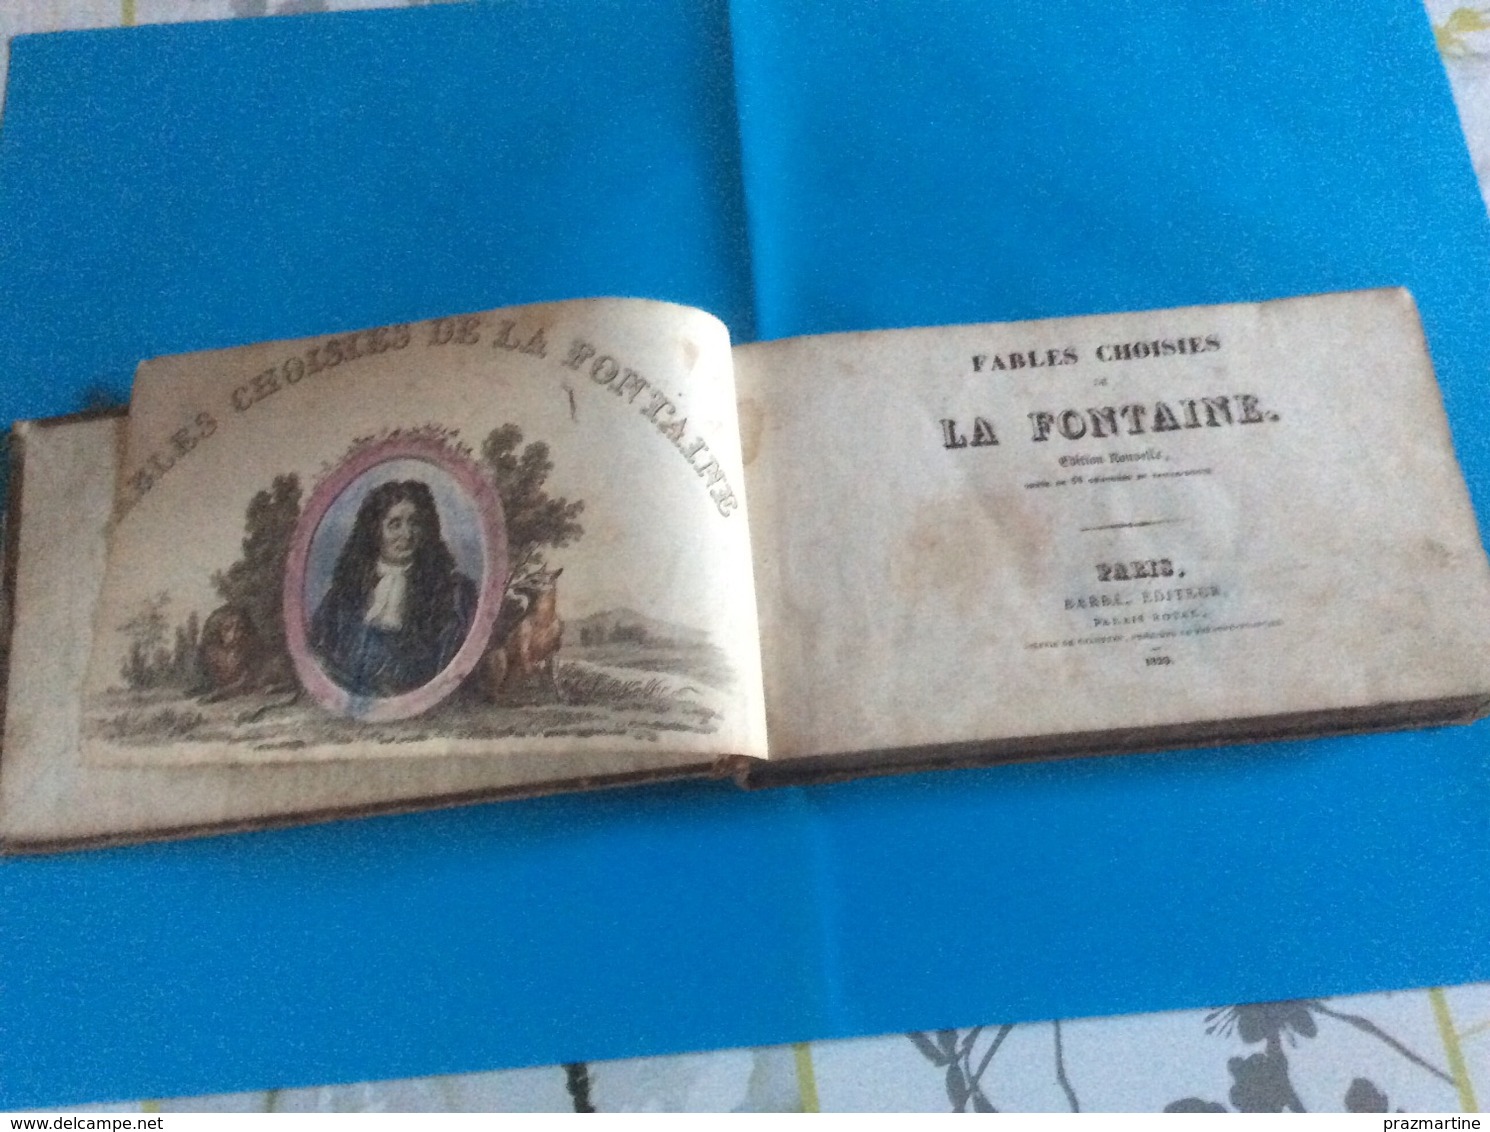 Fables Choisies De La Fontaine 1829 - French Authors